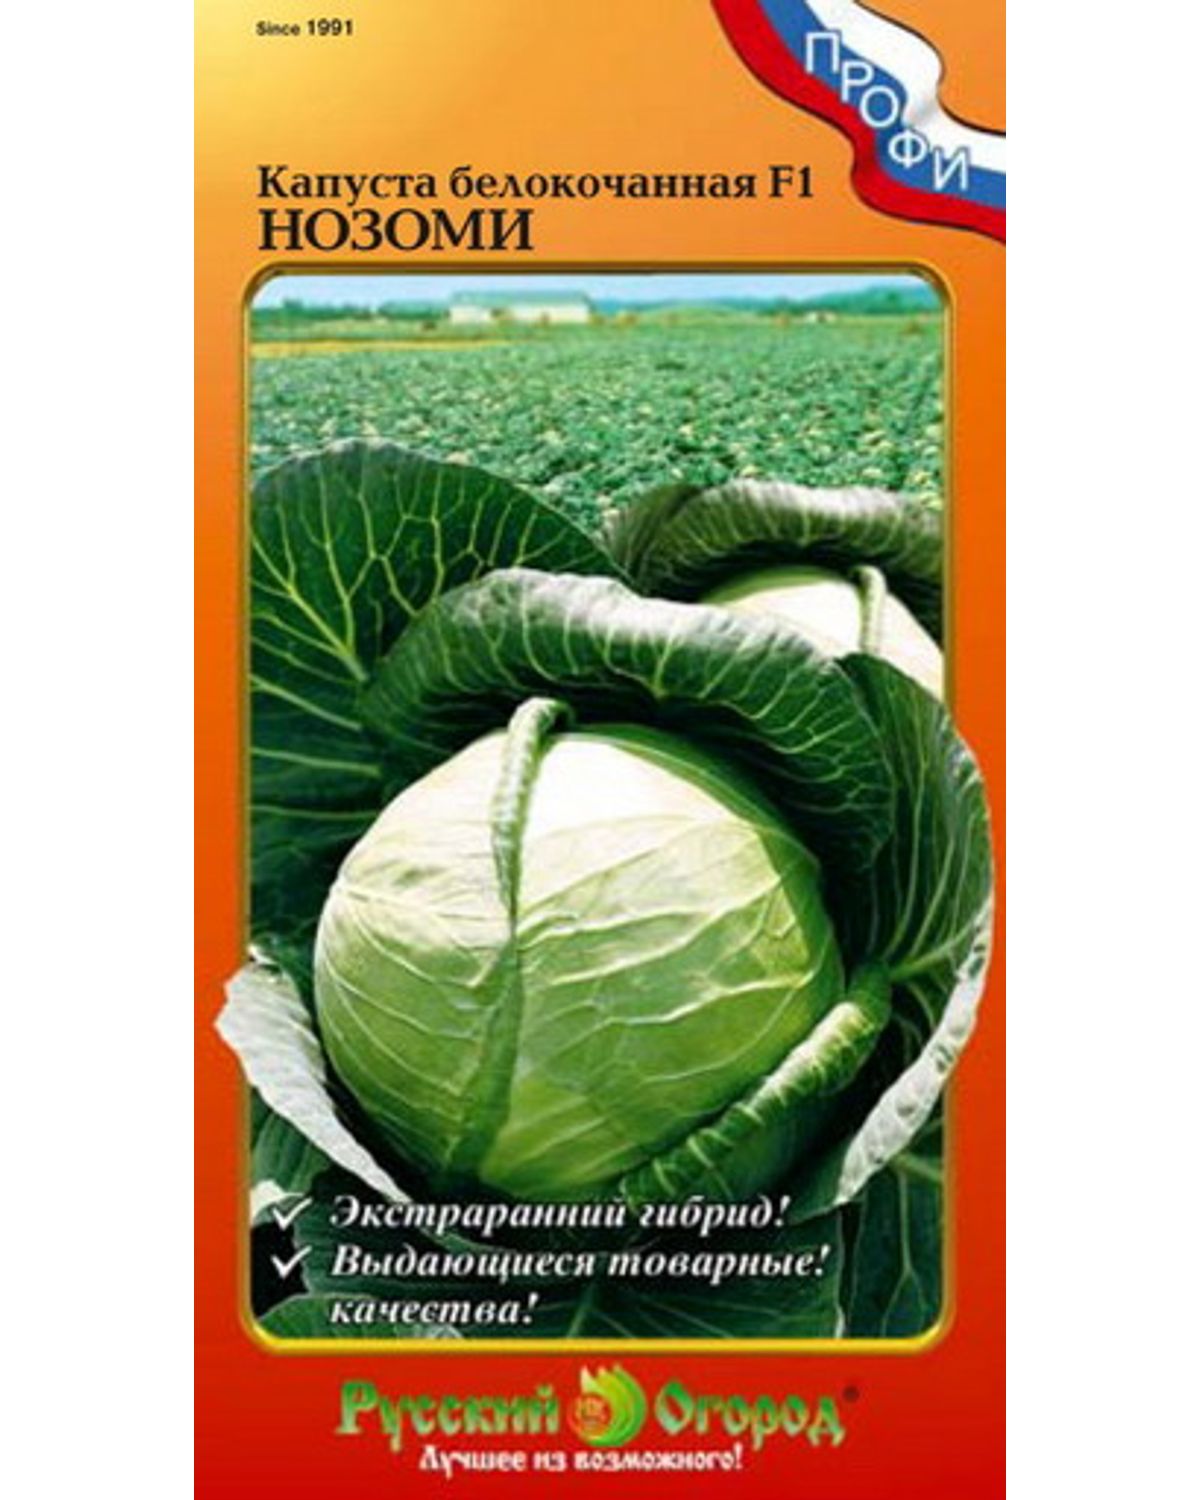 Семена капуста белокочанная Русский огород Нозоми F1 799116 1 уп. - купитьв Москве, цены на Мегамаркет